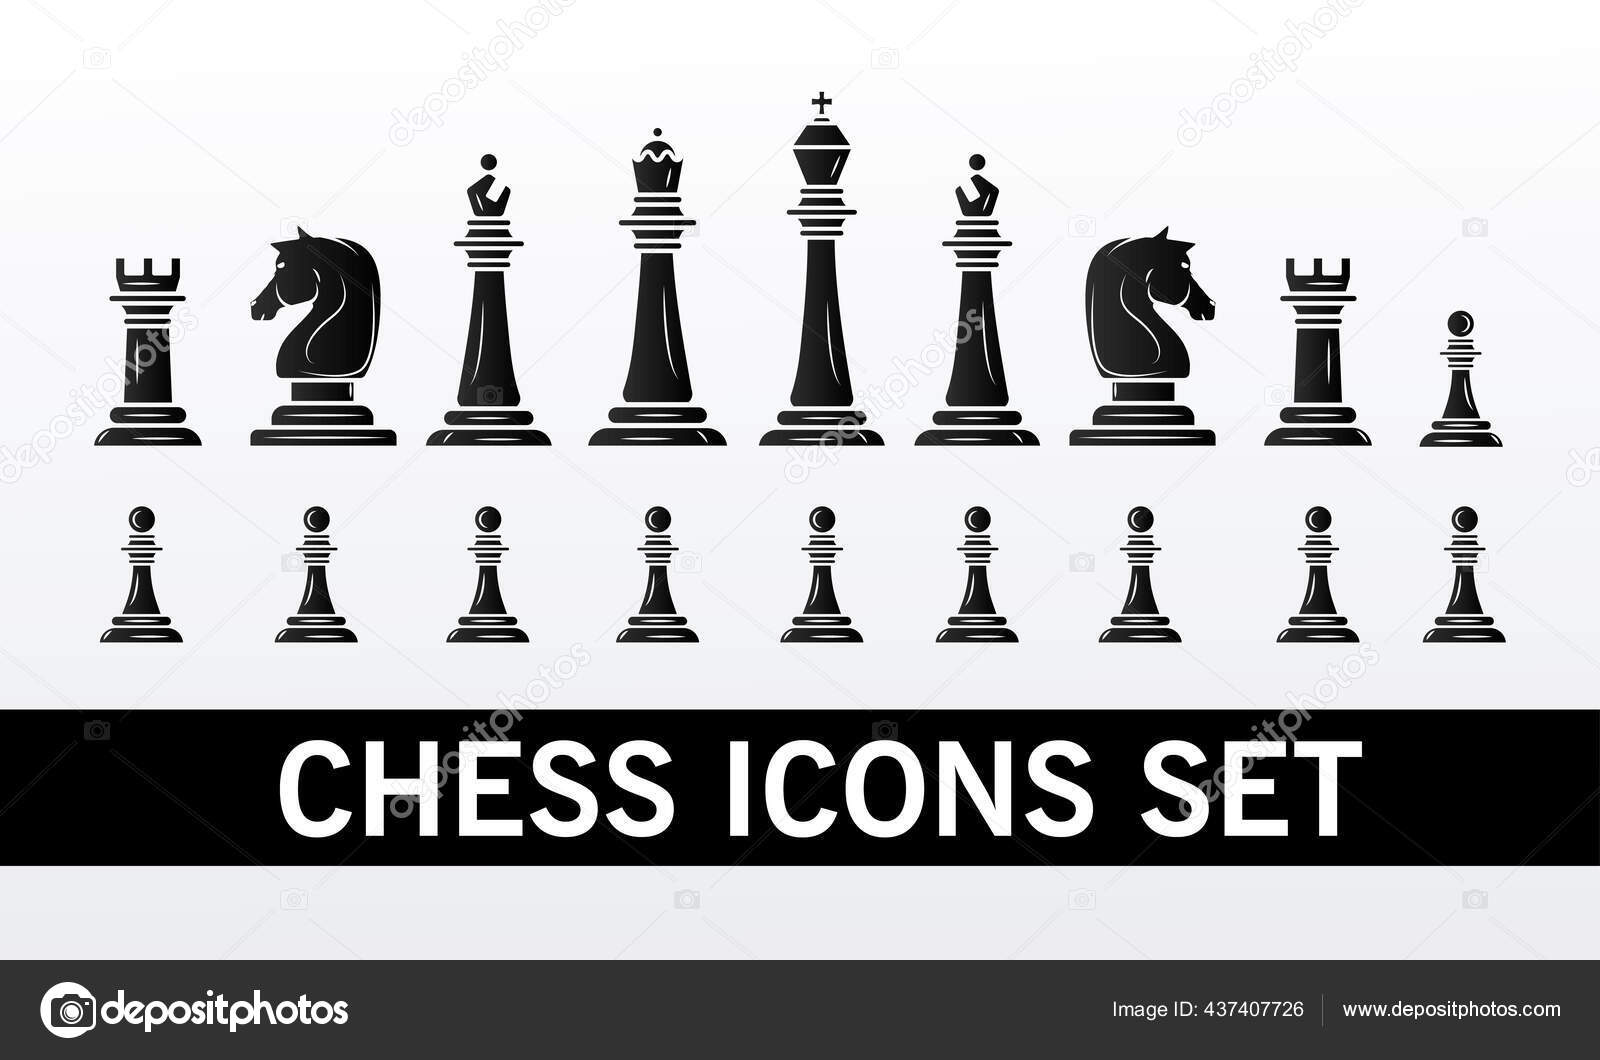 Quatro ilustrações de peças de xadrez